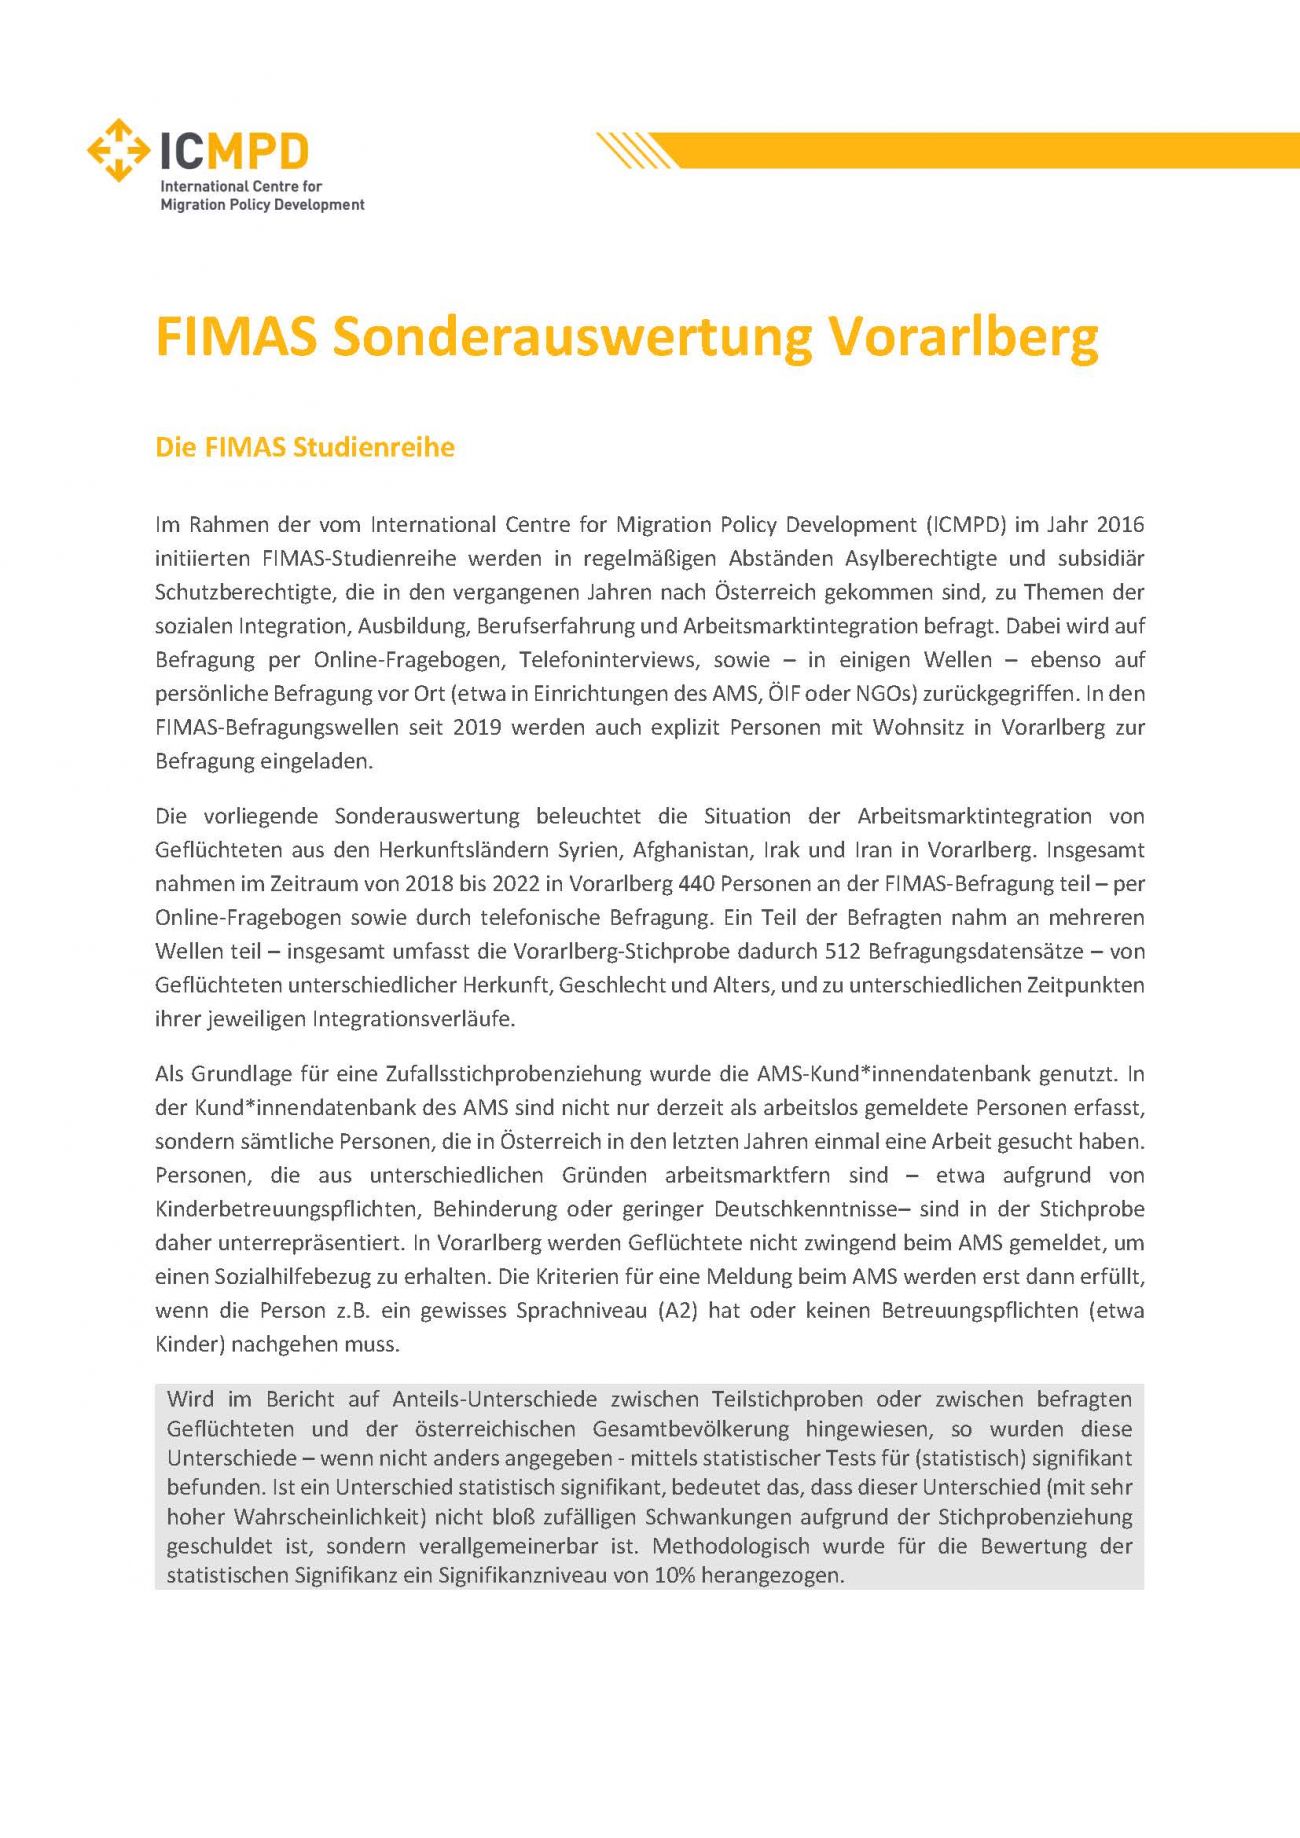 FIMAS Sonderauswertung Vorarlberg_online (003)_Page_01.jpg